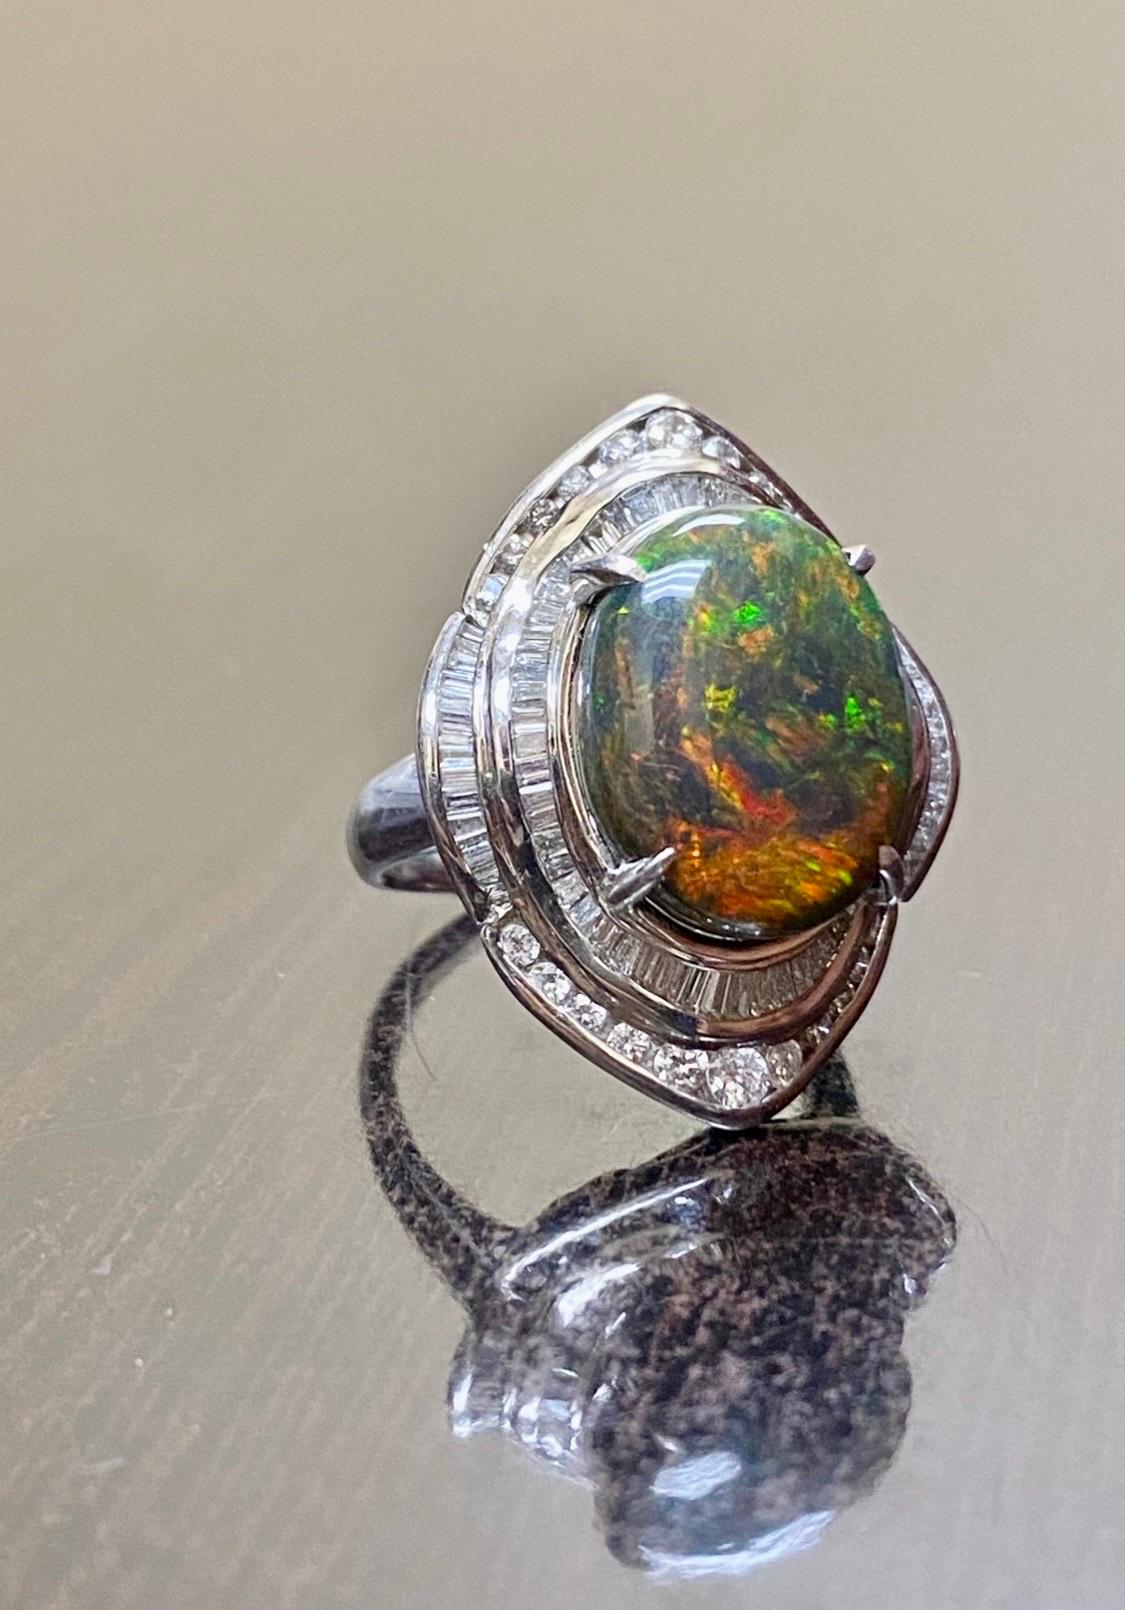 Collection/One Designs

Notre dernier design ! Un élégant cabochon d'opale noire australienne Lightning Ridge, entièrement fait à la main et unique en son genre, entouré de magnifiques diamants baguettes dans une monture en platine.

Métal - 90 % de